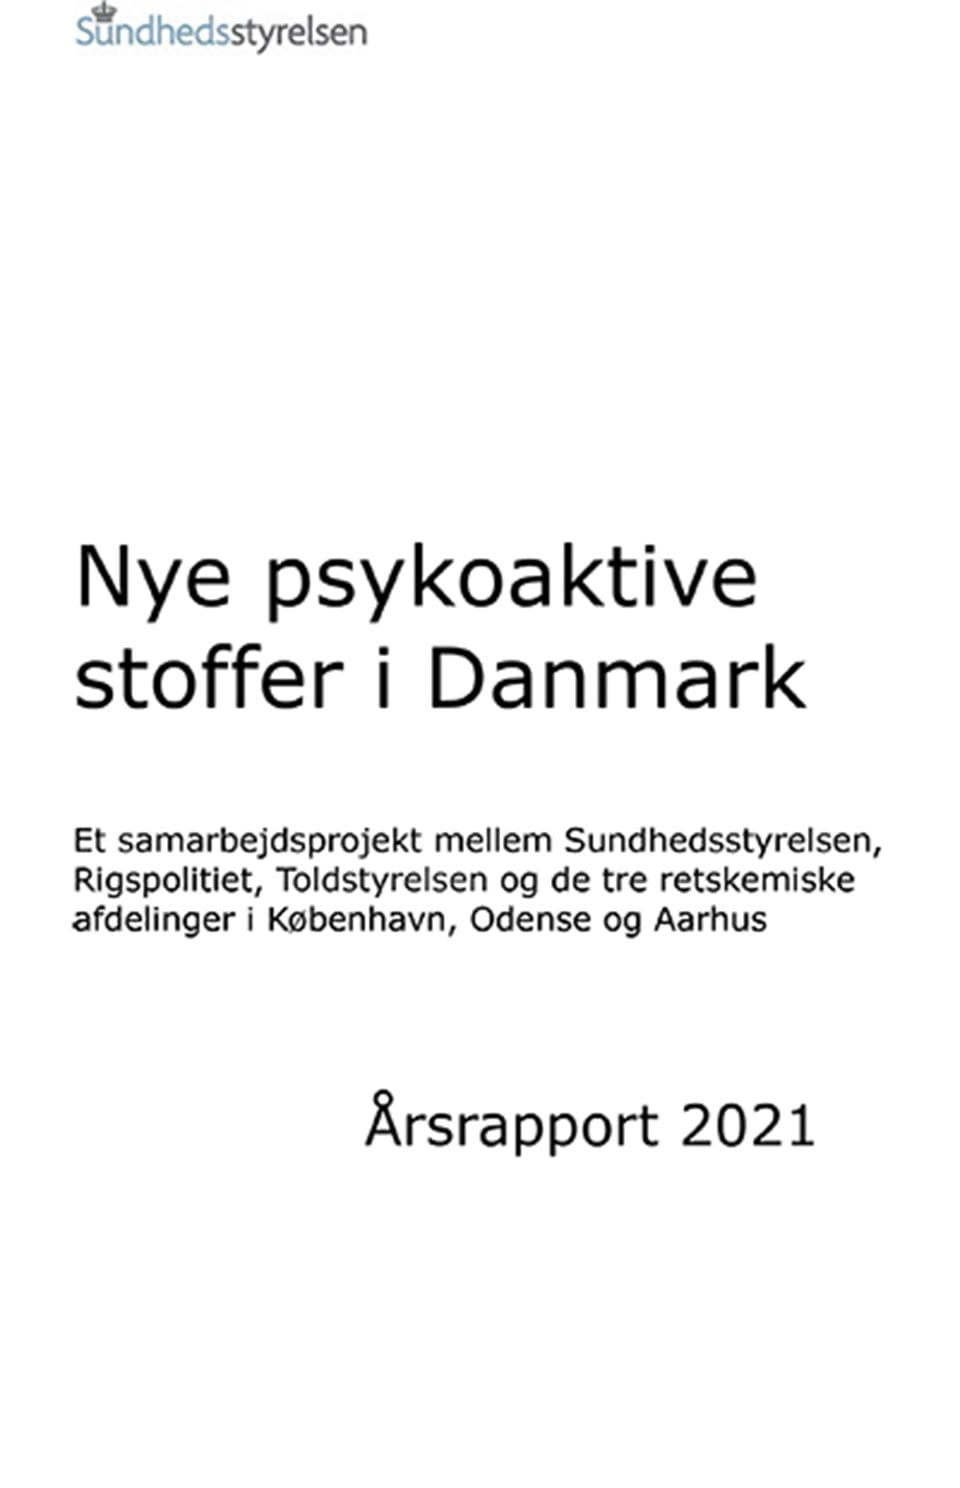 Nye psykoaktive stoffer i Danmark: Årsrapport 2021